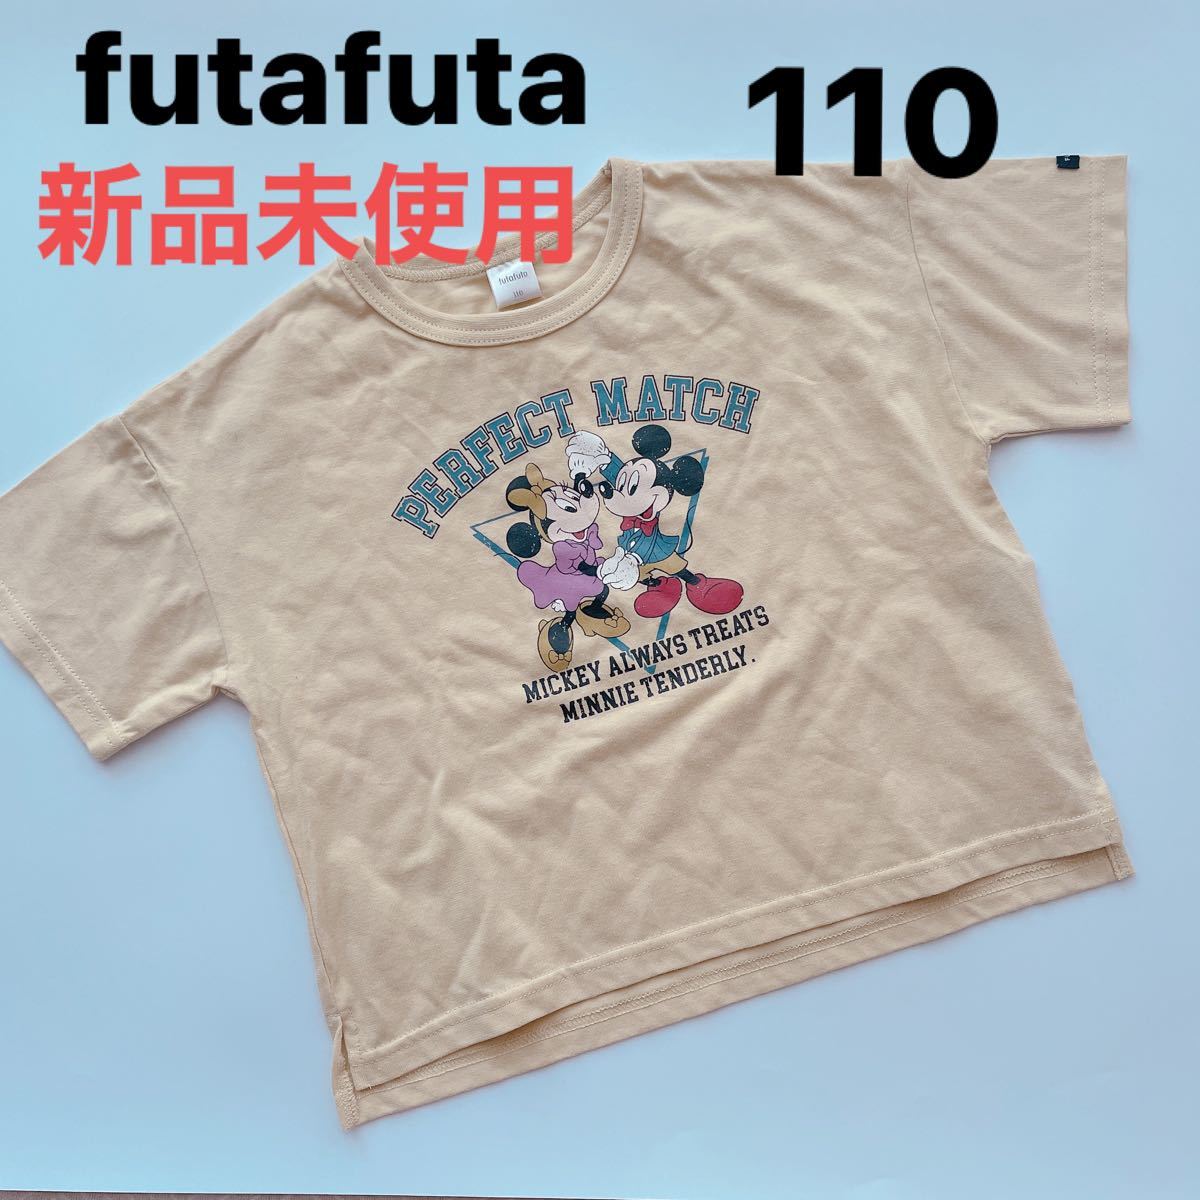 商品 futafuta 半袖Tシャツ 140 しまむら 半ズボン 130